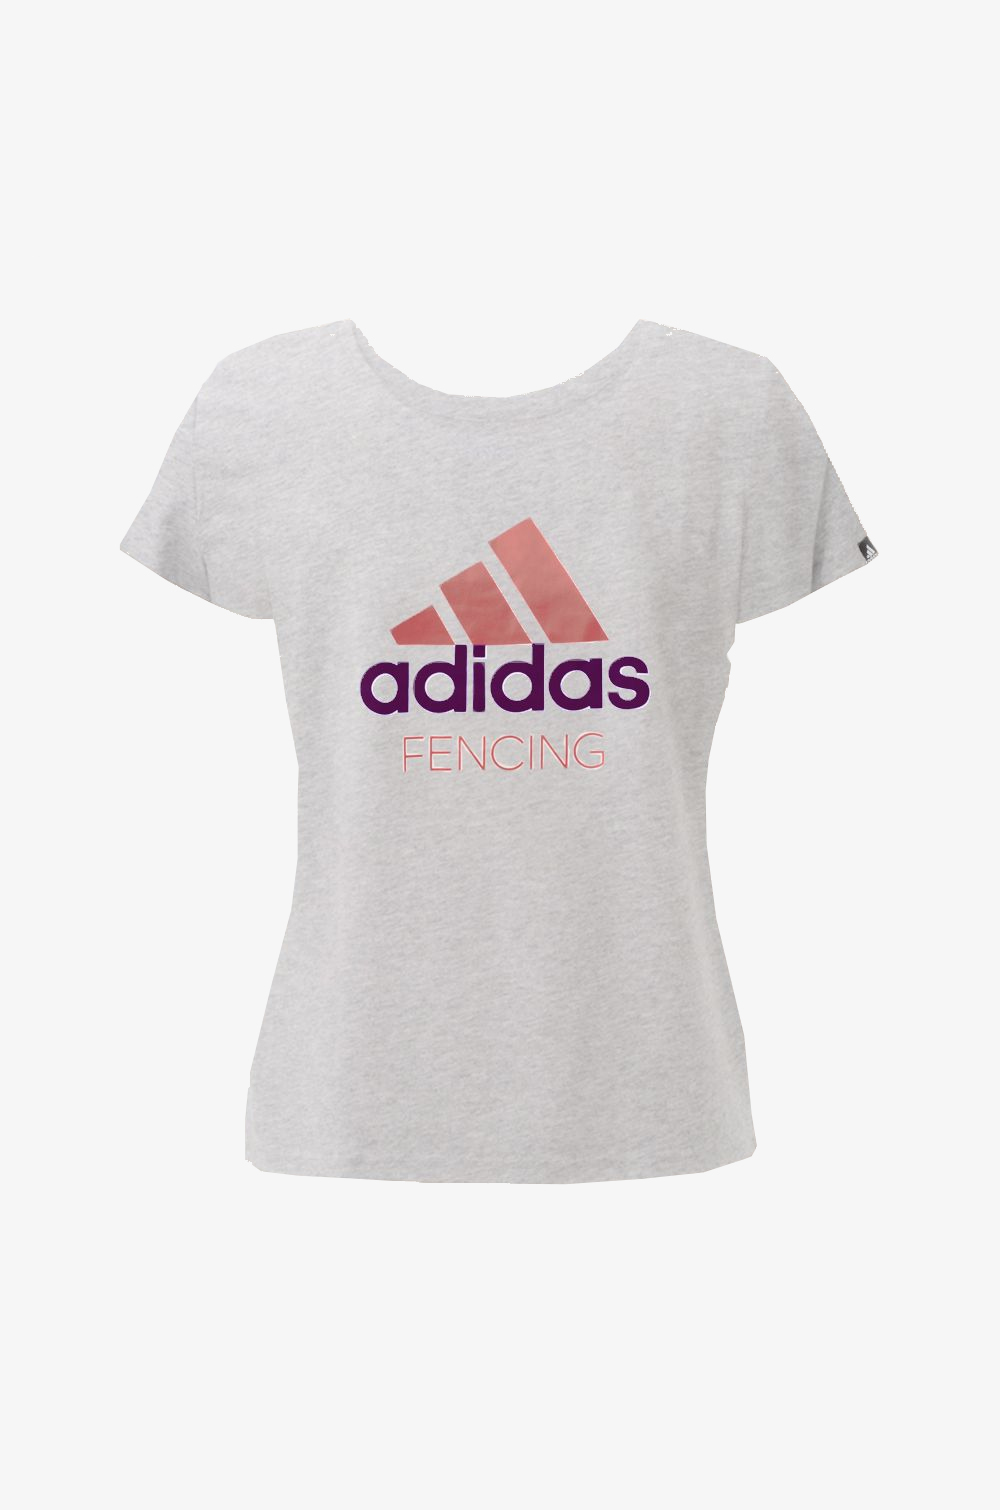 adidas T-shirt Women